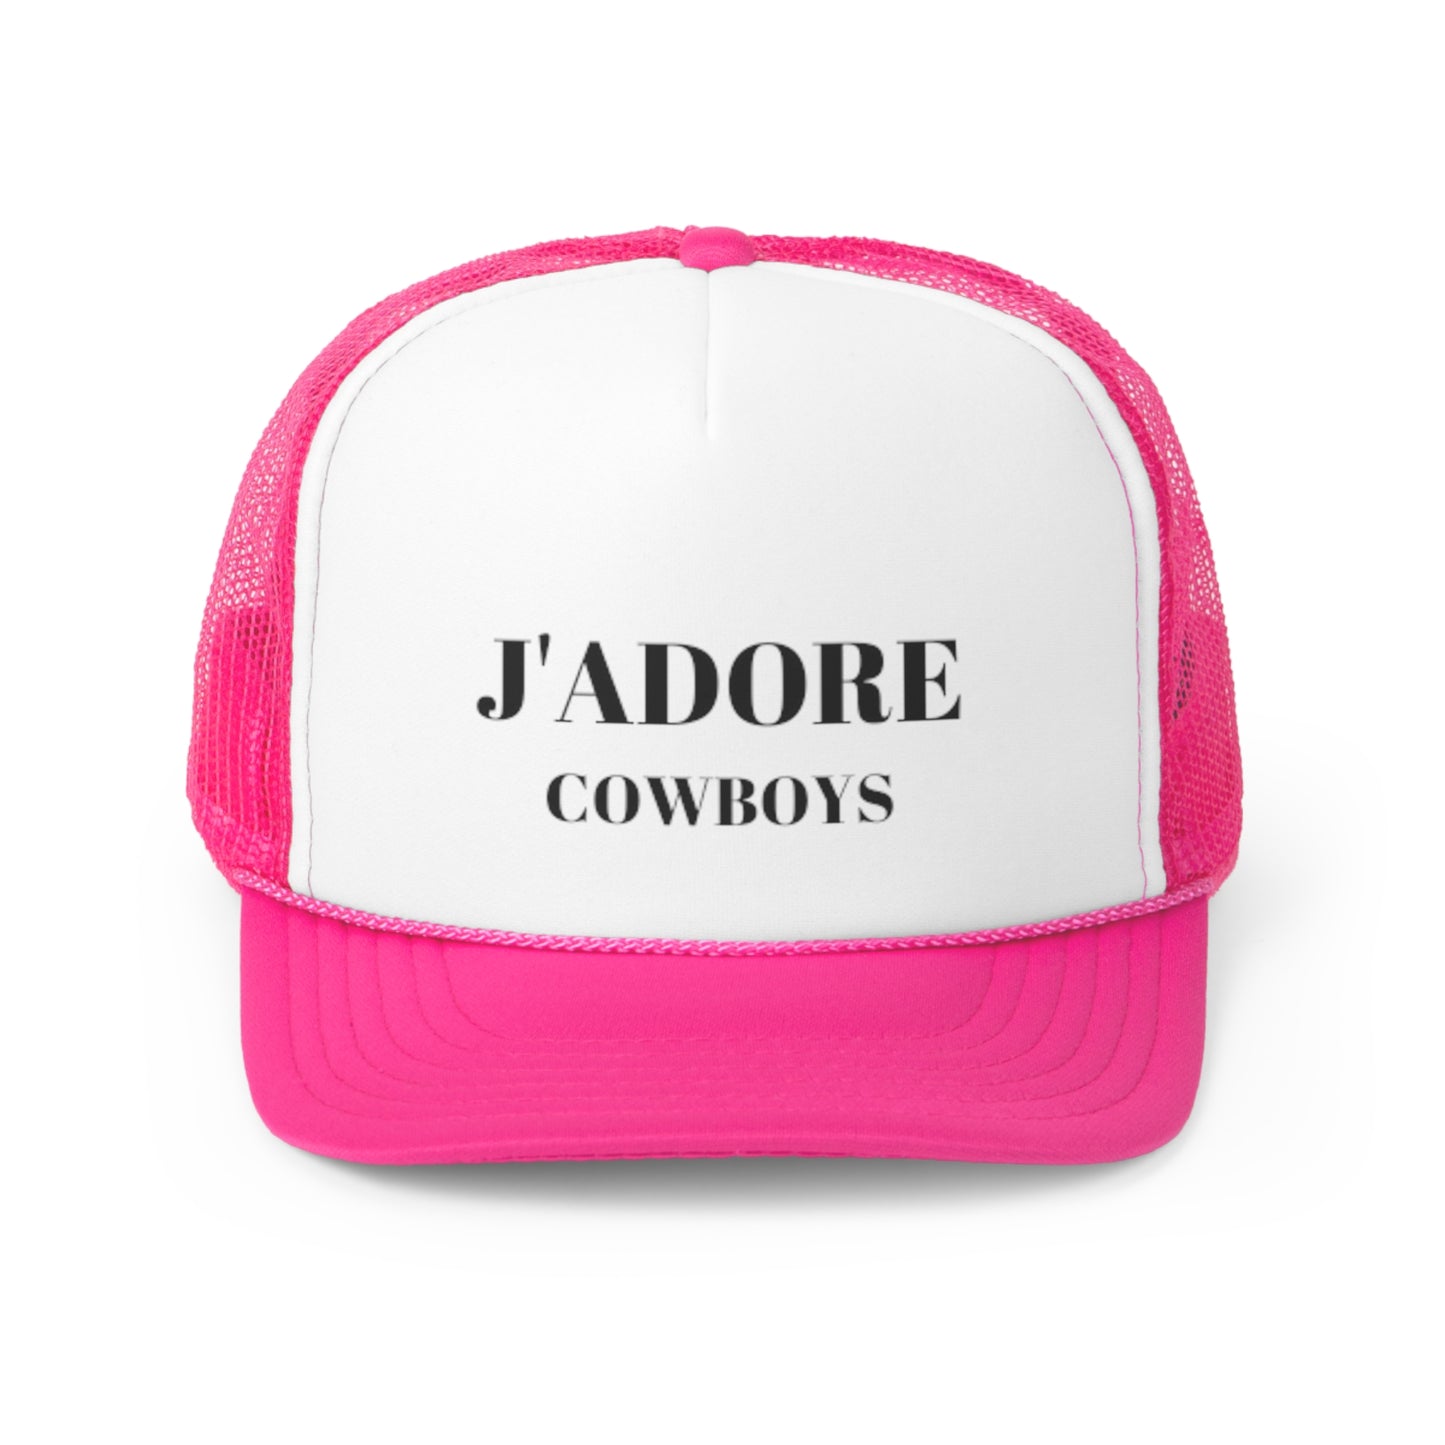 J'Adore Cowboys: Trucker Caps